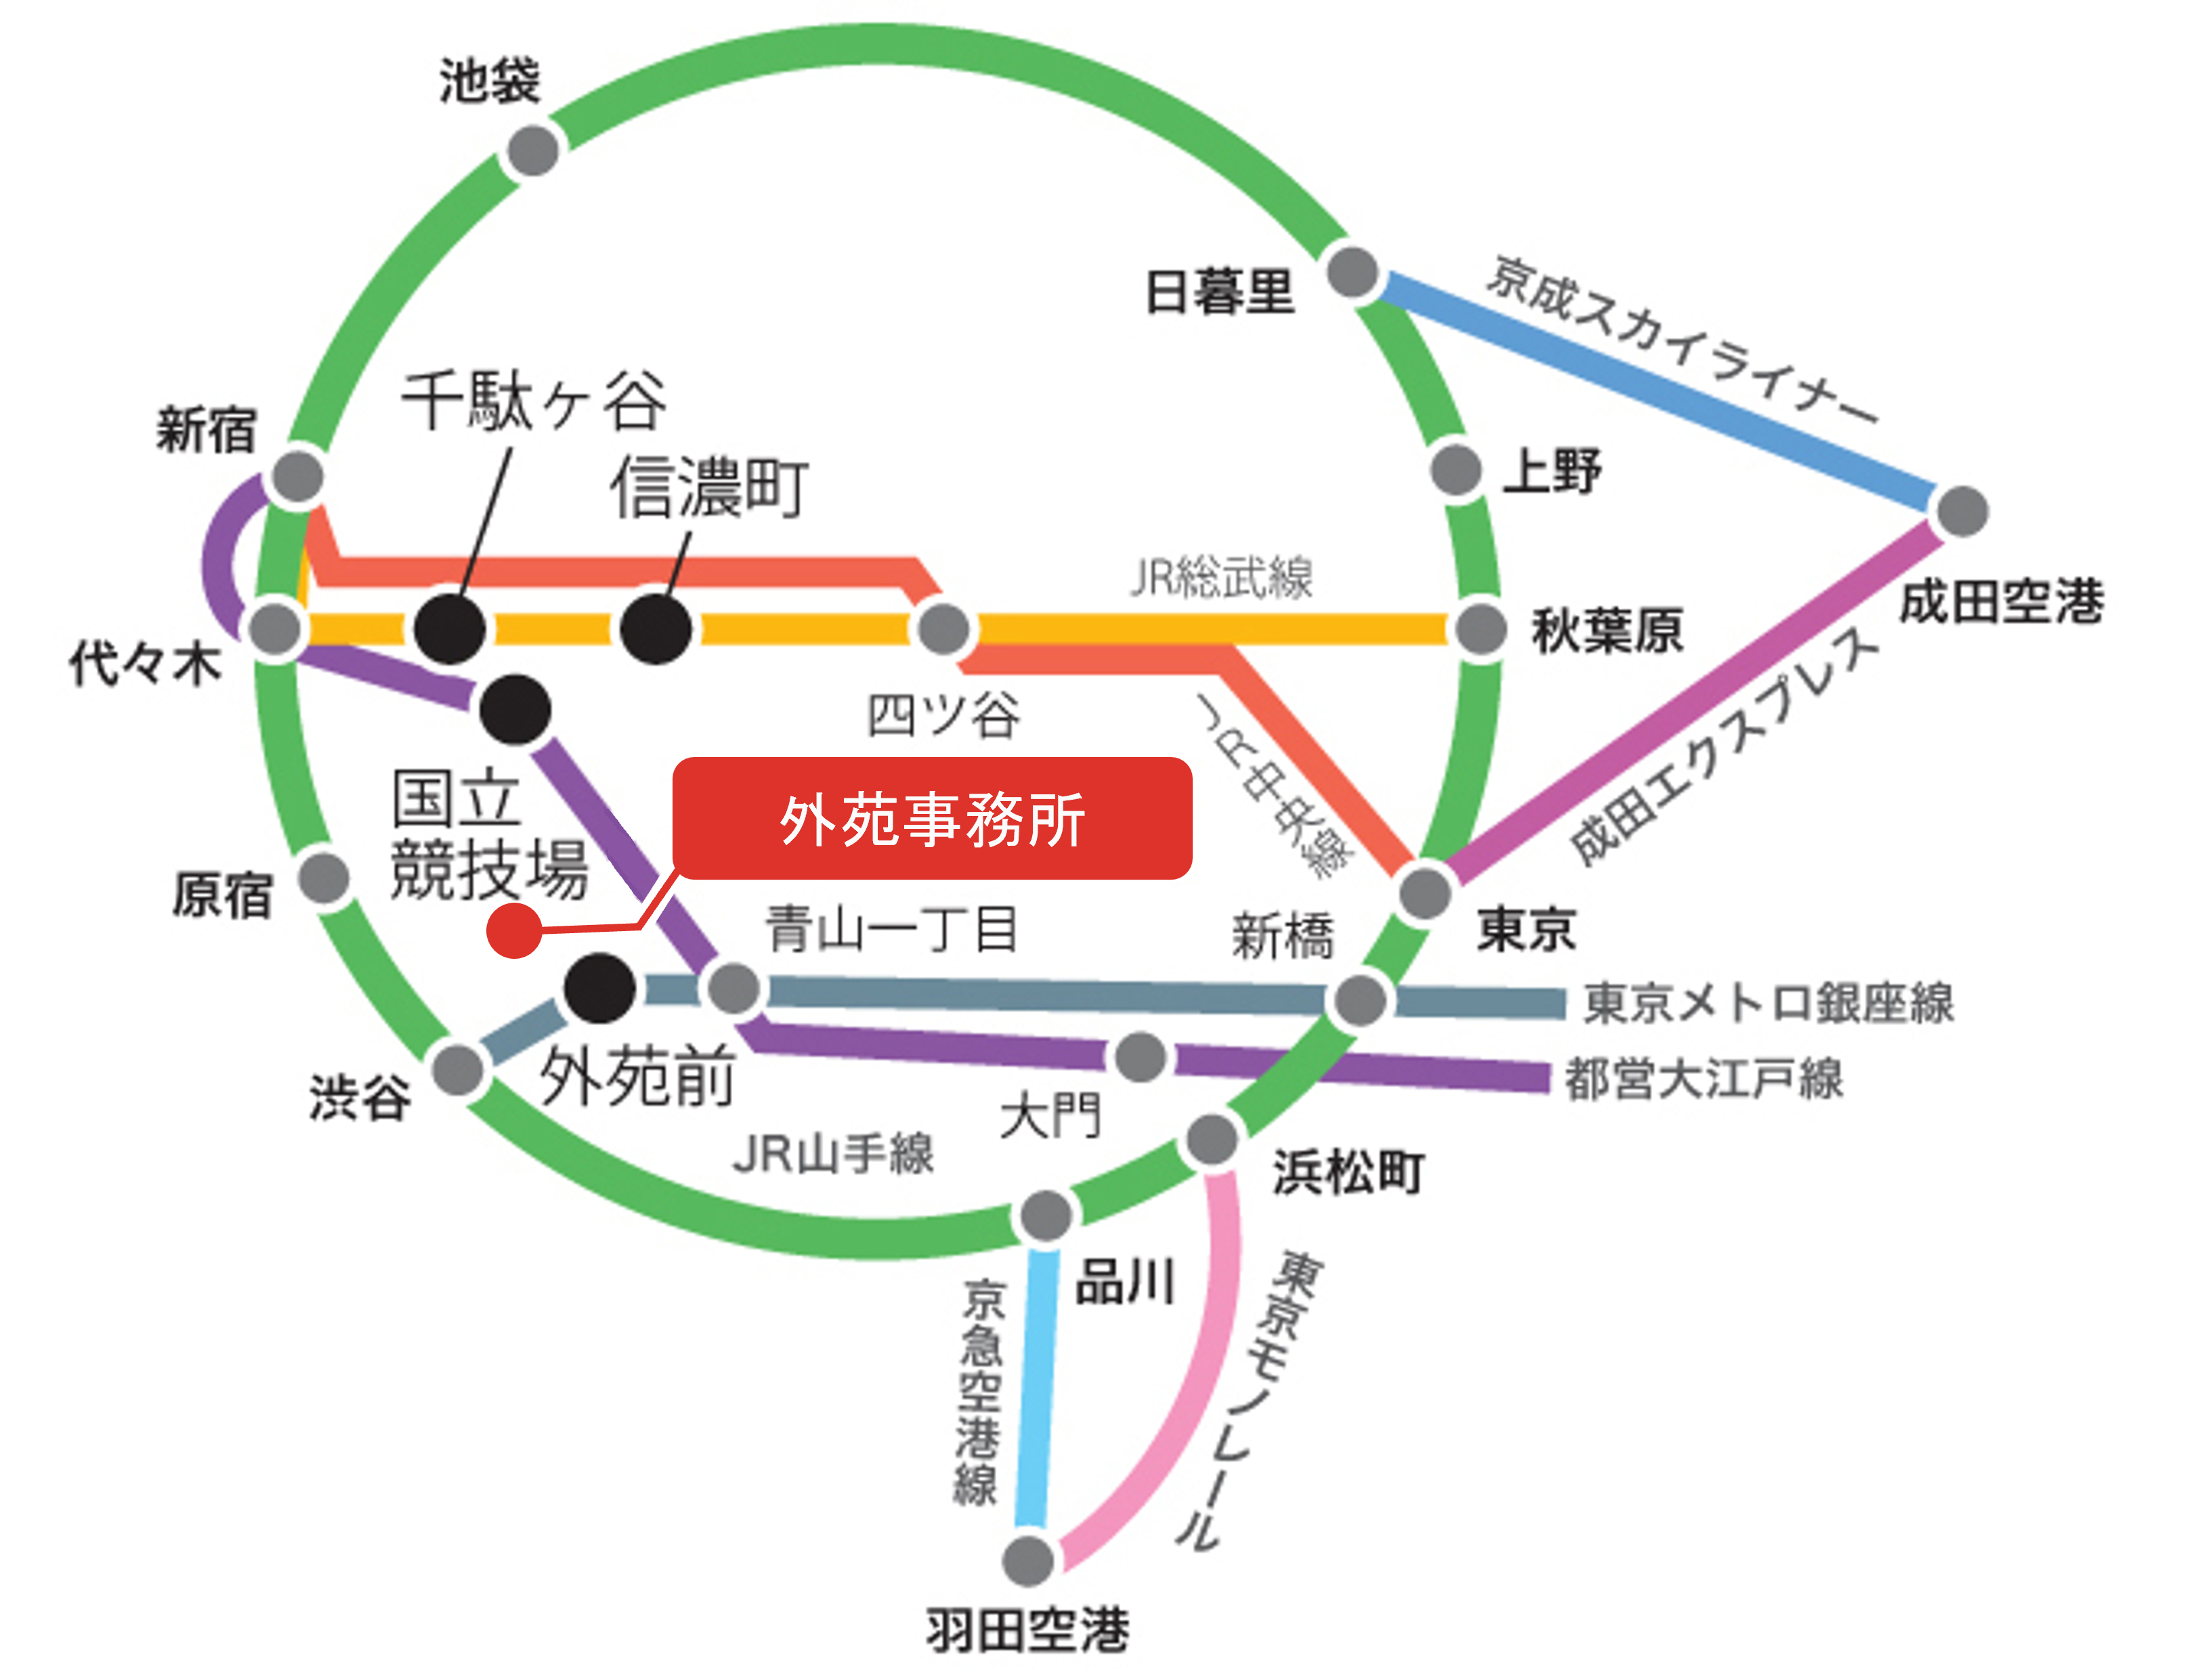 外苑事務所の最寄り駅は地下鉄銀座線外苑前駅。銀座線へはJR山手線渋谷駅または半蔵門線青山一丁目駅等から乗り換えることができます